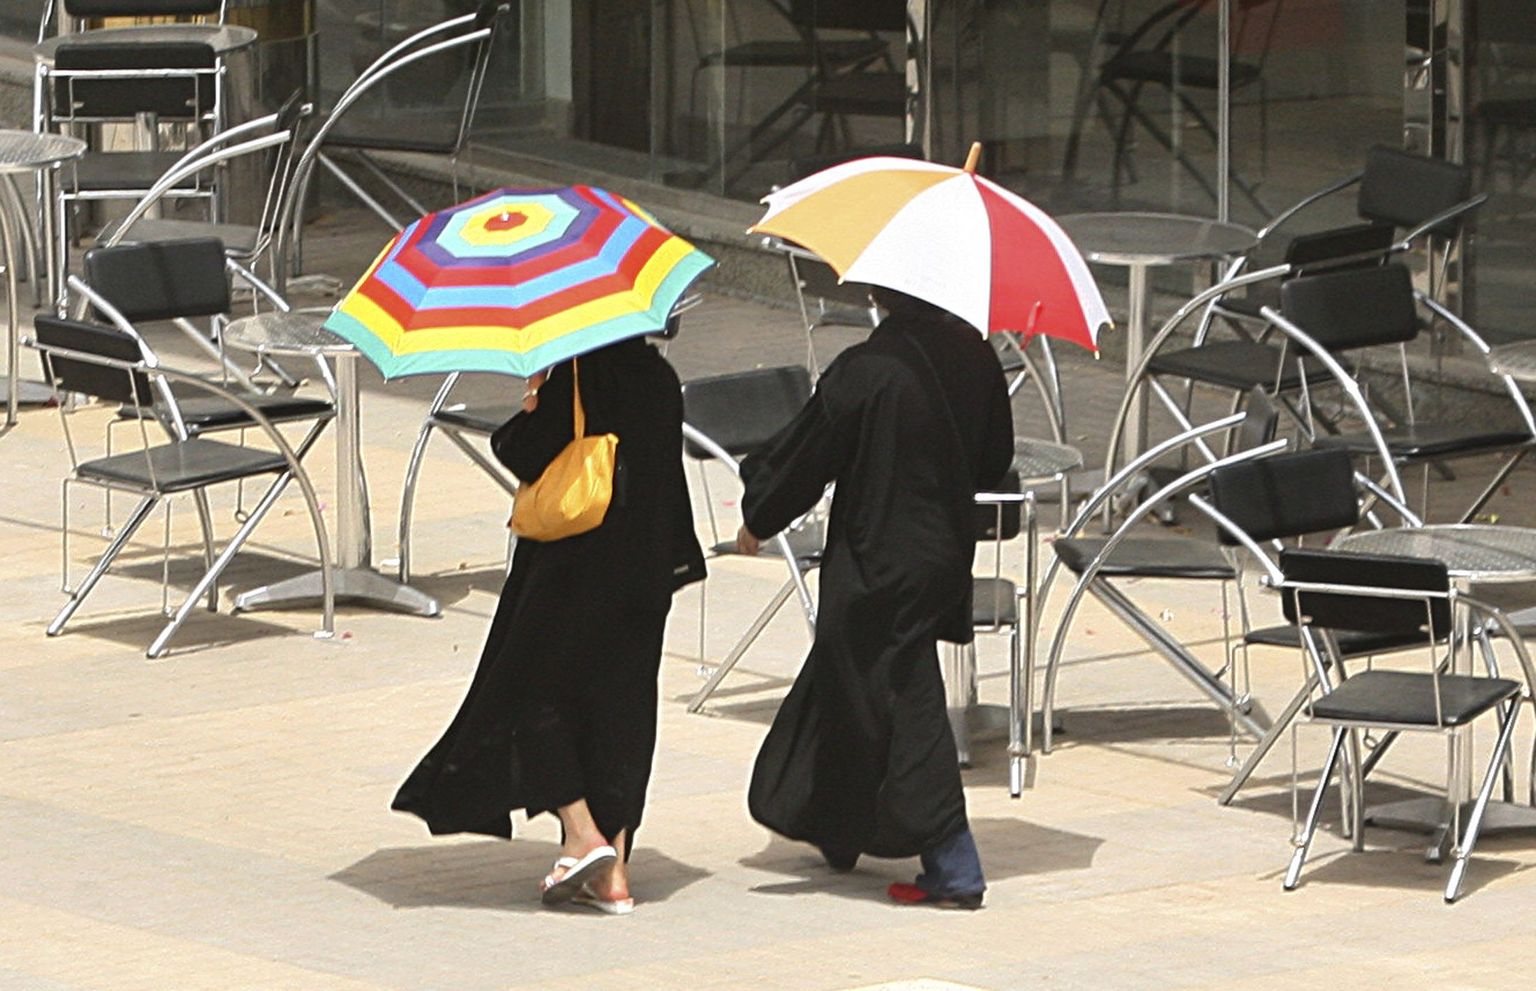 Saudi Araabia naised kõnnivad mööda suletud kohvipoest